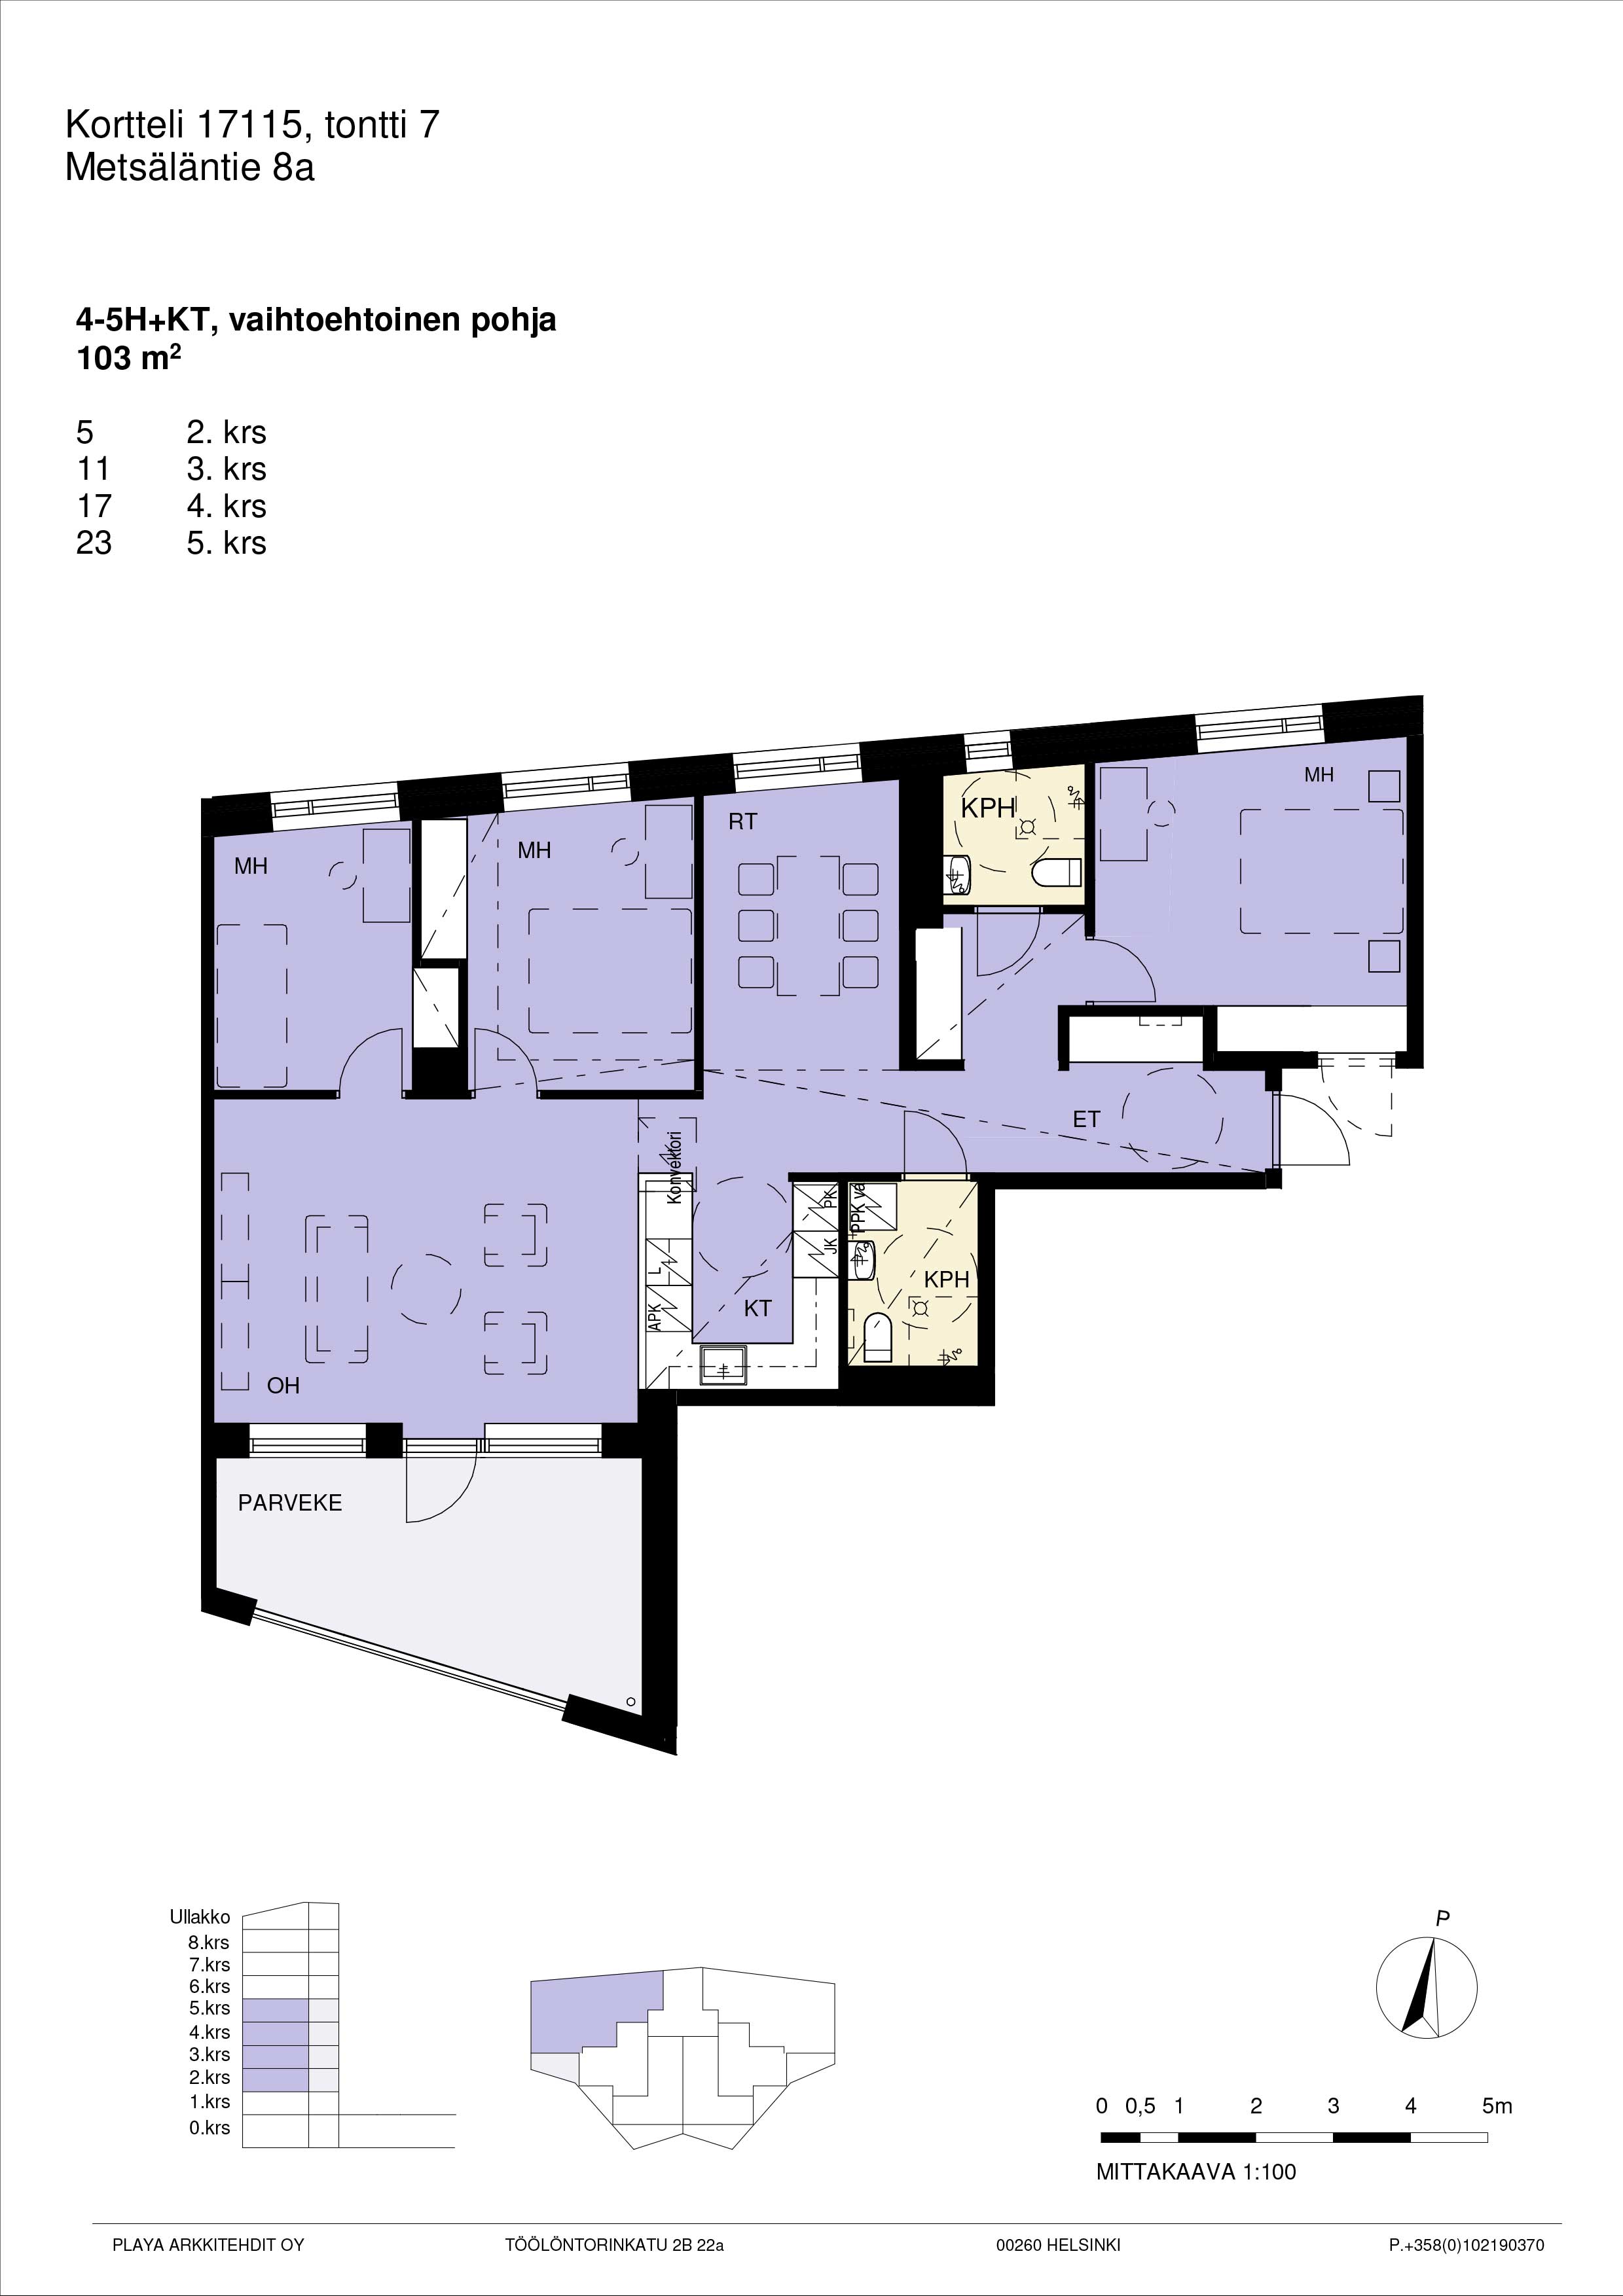 Vaihtoehtopohja: Pohjakuva A17, 4-5h+kt yhtenäinen suuri asunto 103 m2